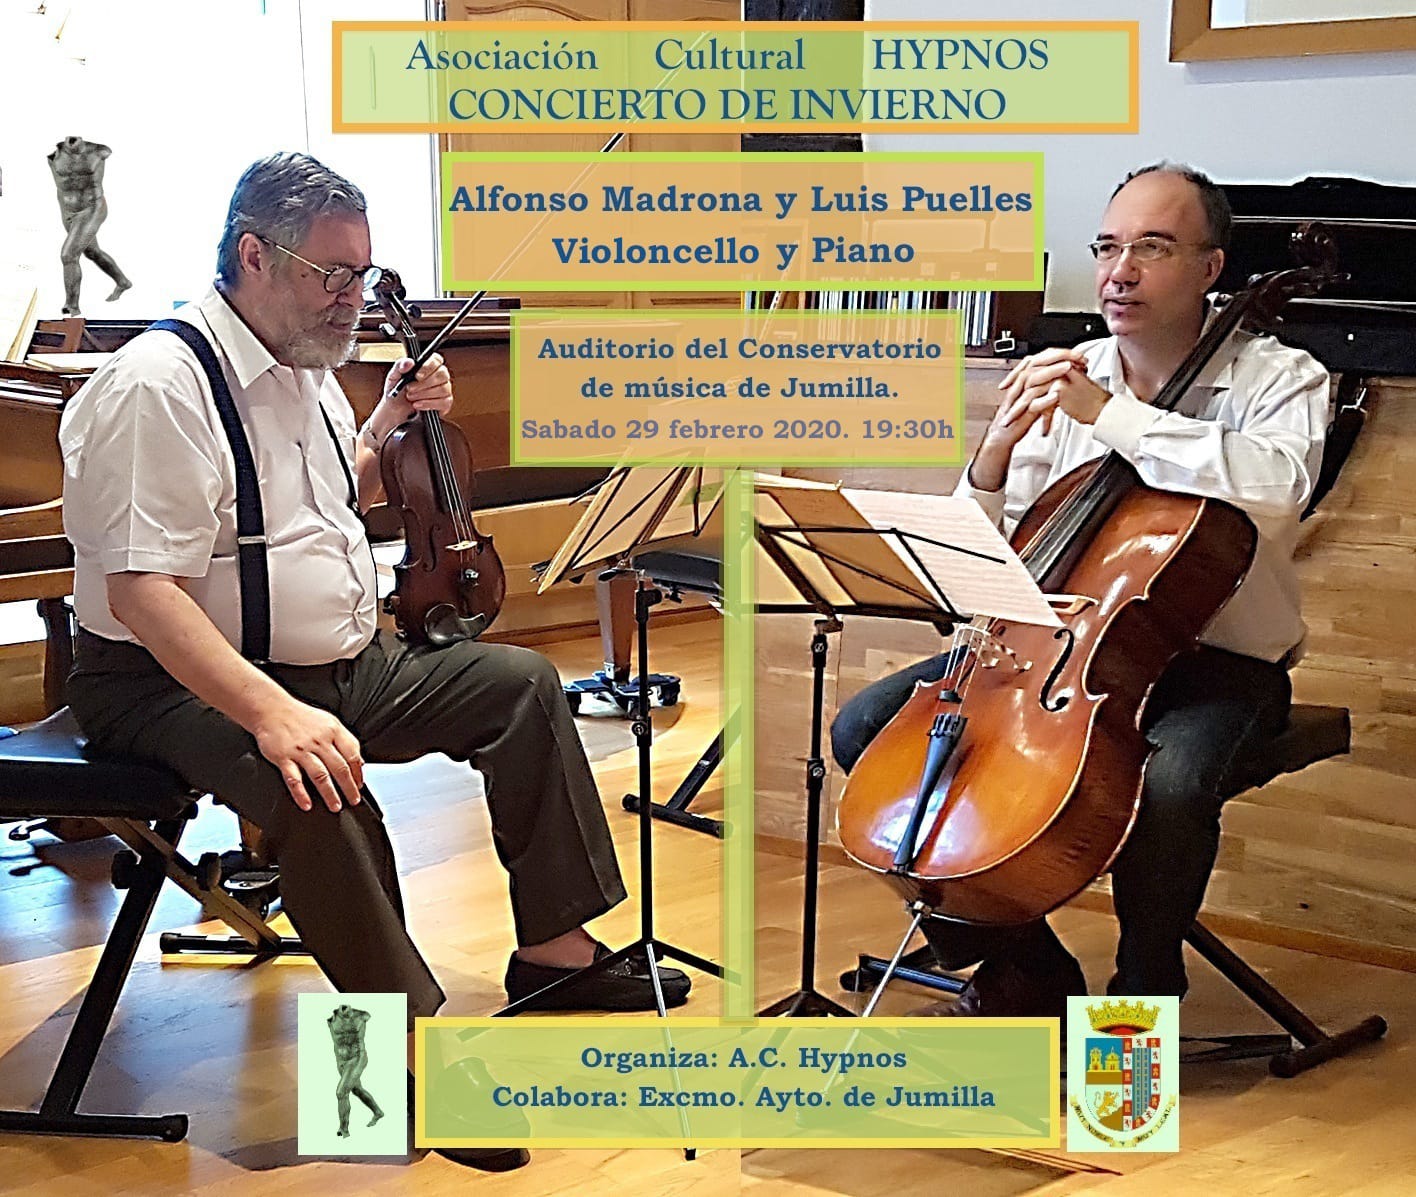 La Asociación Cultural Hypnos celebra este sábado el Concierto de Invierno